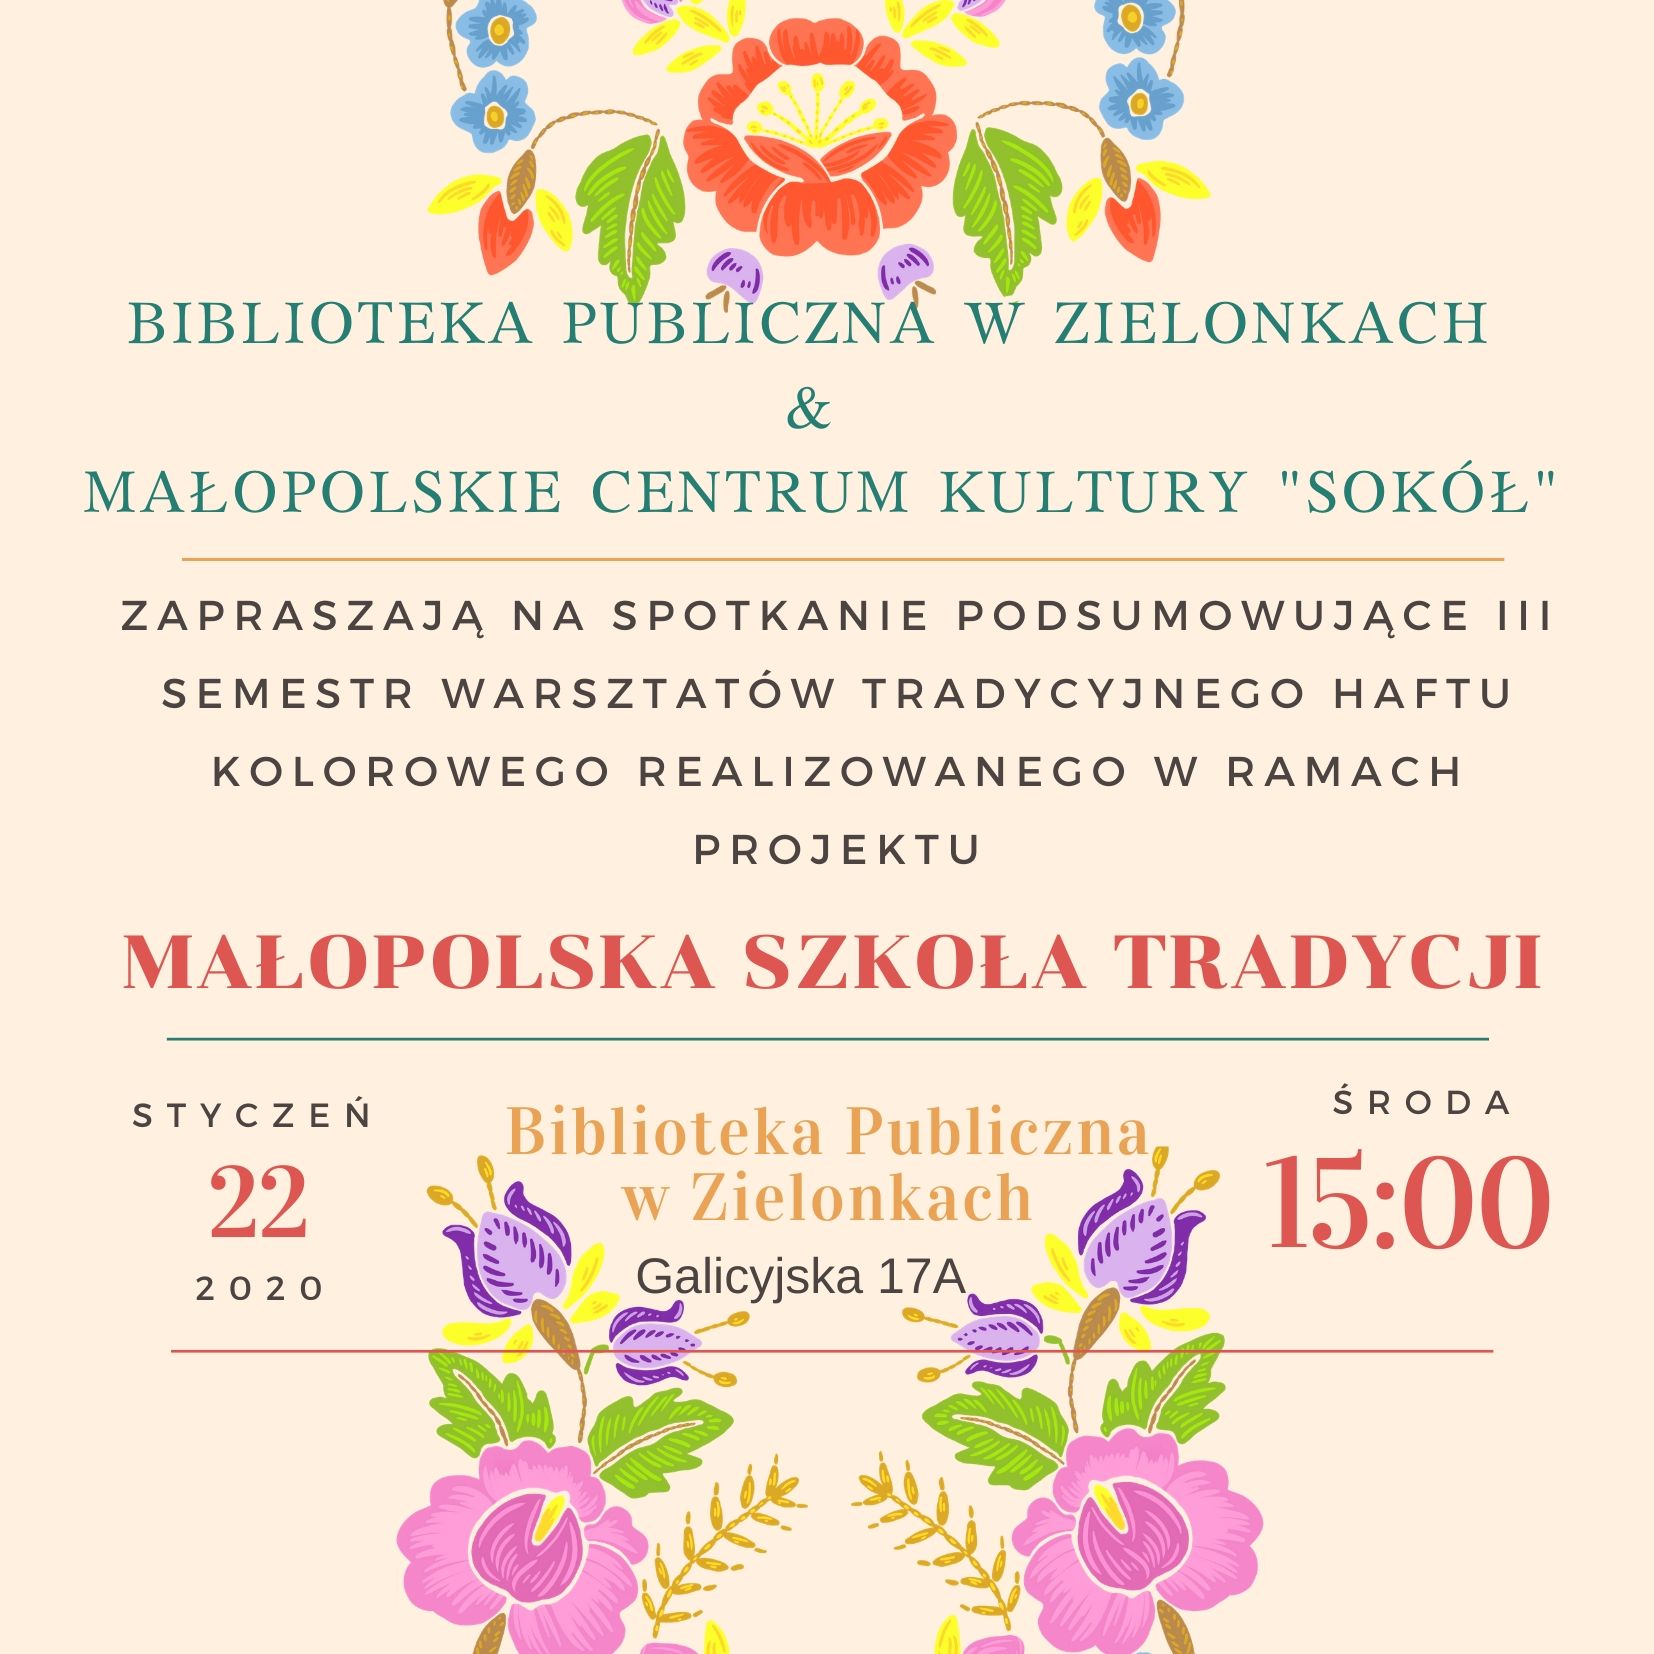 biblioteka publiczna w zielonkach małopolskie Centrum kultury sokół 